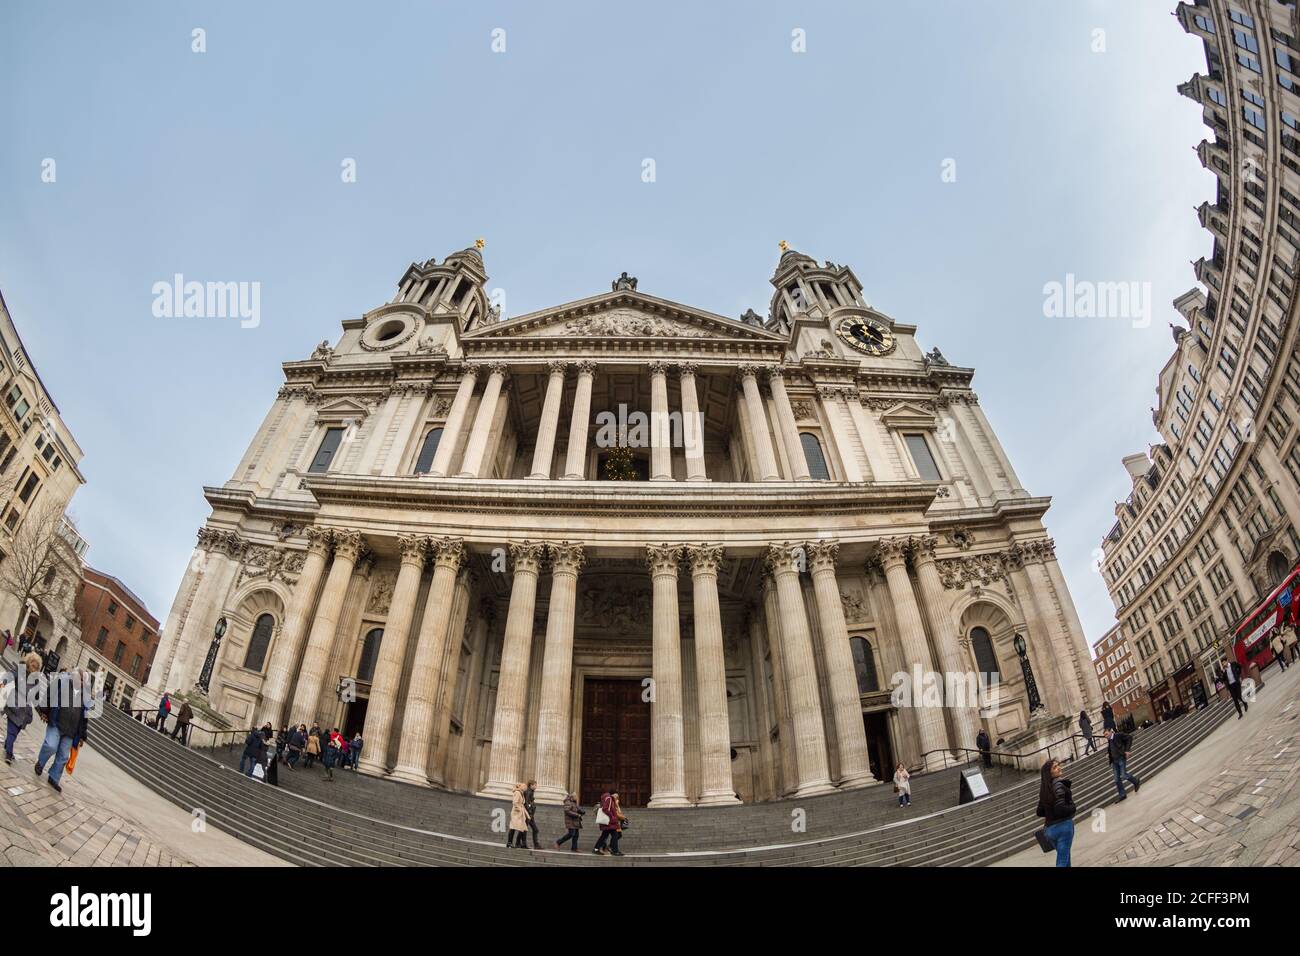 St Paul's Cathedral, ikonische Londoner Wahrzeichen Kirche, Blick aus der Fischperspektive, London, England, Großbritannien Stockfoto